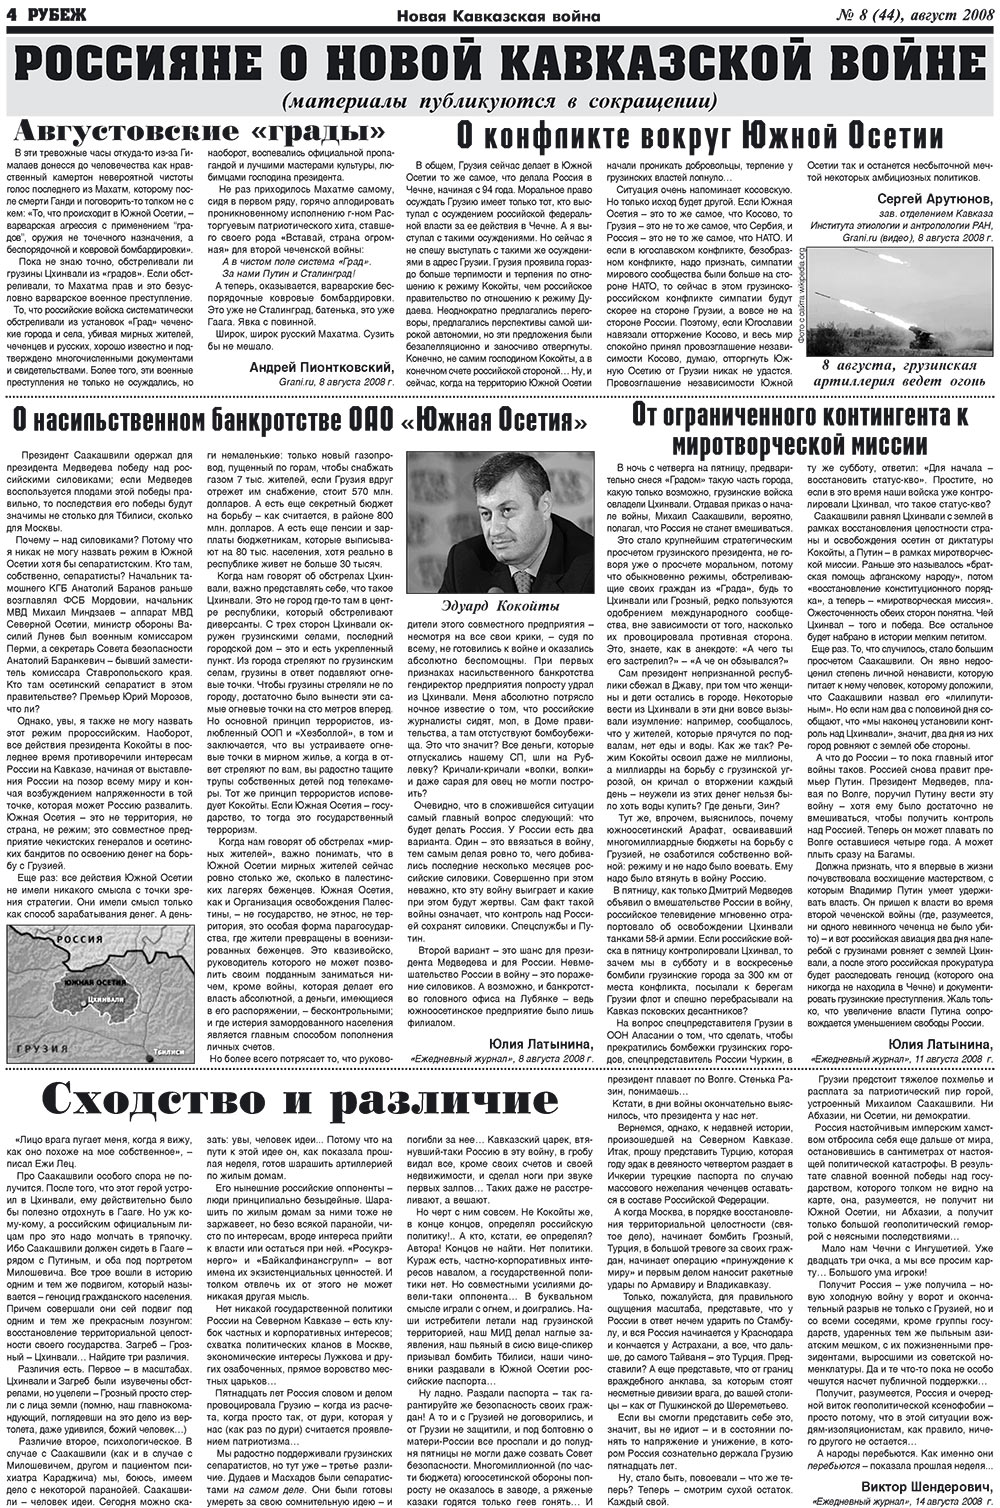 Рубеж (газета). 2008 год, номер 8, стр. 4